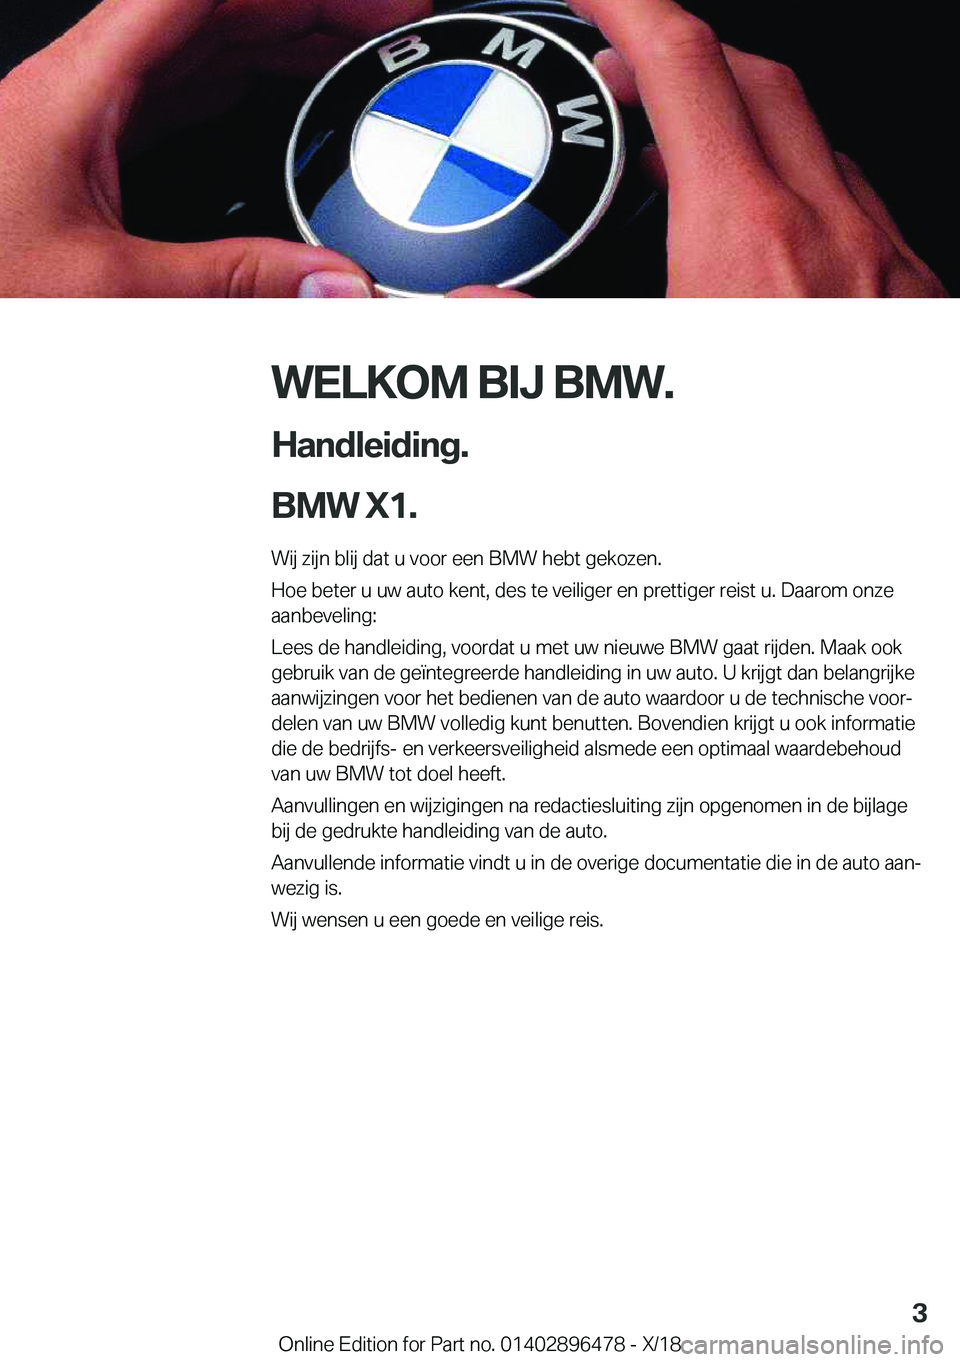 BMW X1 2019  Instructieboekjes (in Dutch) �W�E�L�K�O�M��B�I�J��B�M�W�.
�H�a�n�d�l�e�i�d�i�n�g�.
�B�M�W��X�1�. �W�i�j��z�i�j�n��b�l�i�j��d�a�t��u��v�o�o�r��e�e�n��B�M�W��h�e�b�t��g�e�k�o�z�e�n�.�H�o�e��b�e�t�e�r��u��u�w��a�u�t�